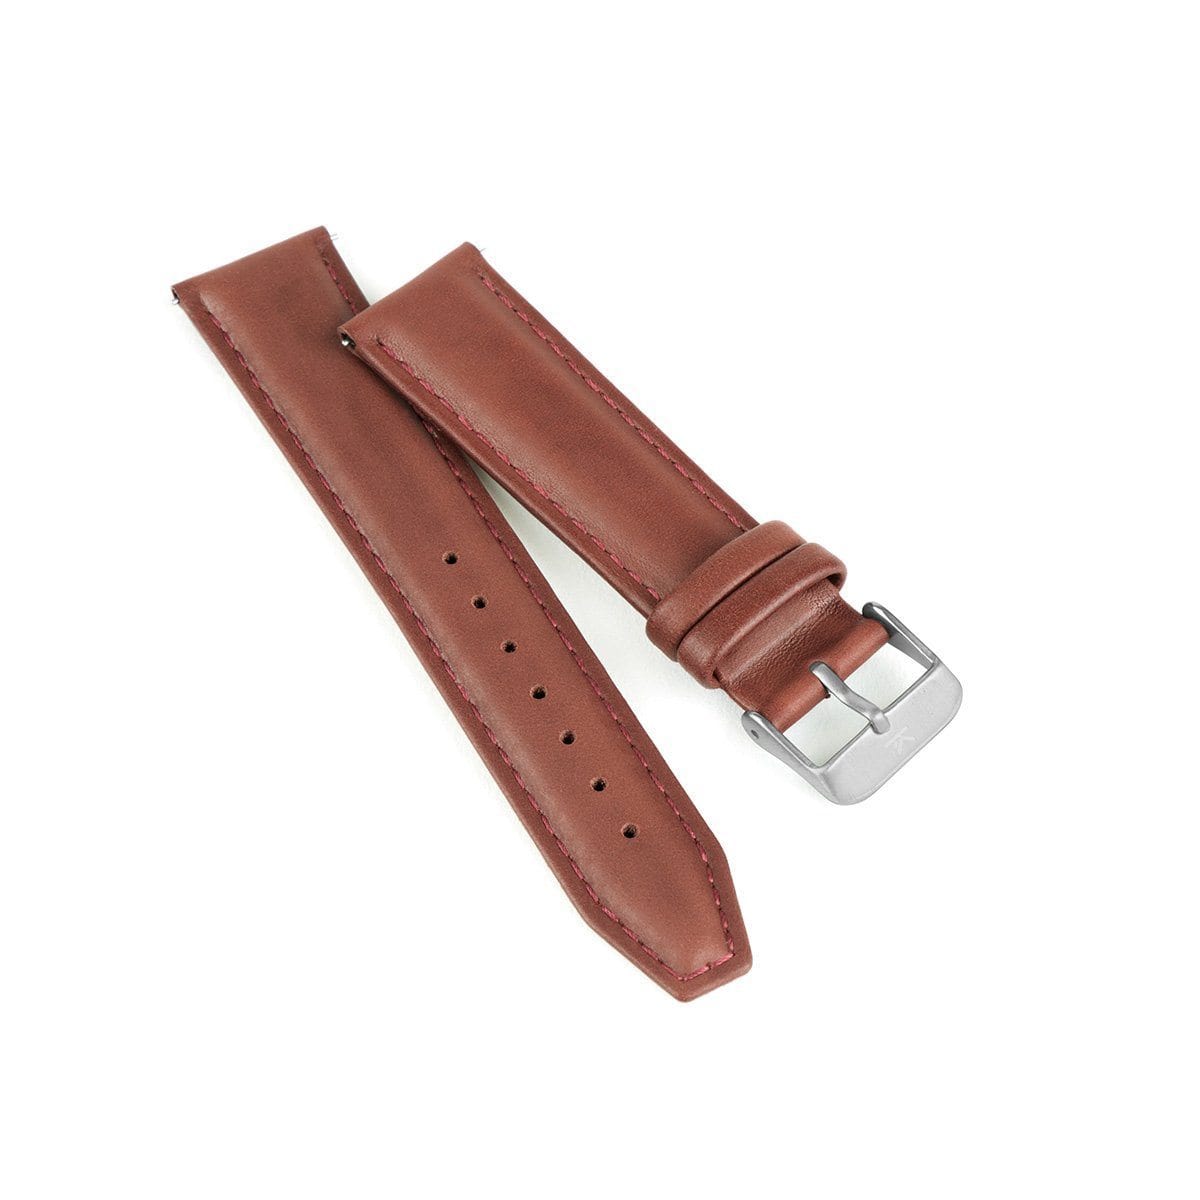 Maroon Stitched Leather Watch Strap - 20mm Width Watch Strap - Kartel Scotland